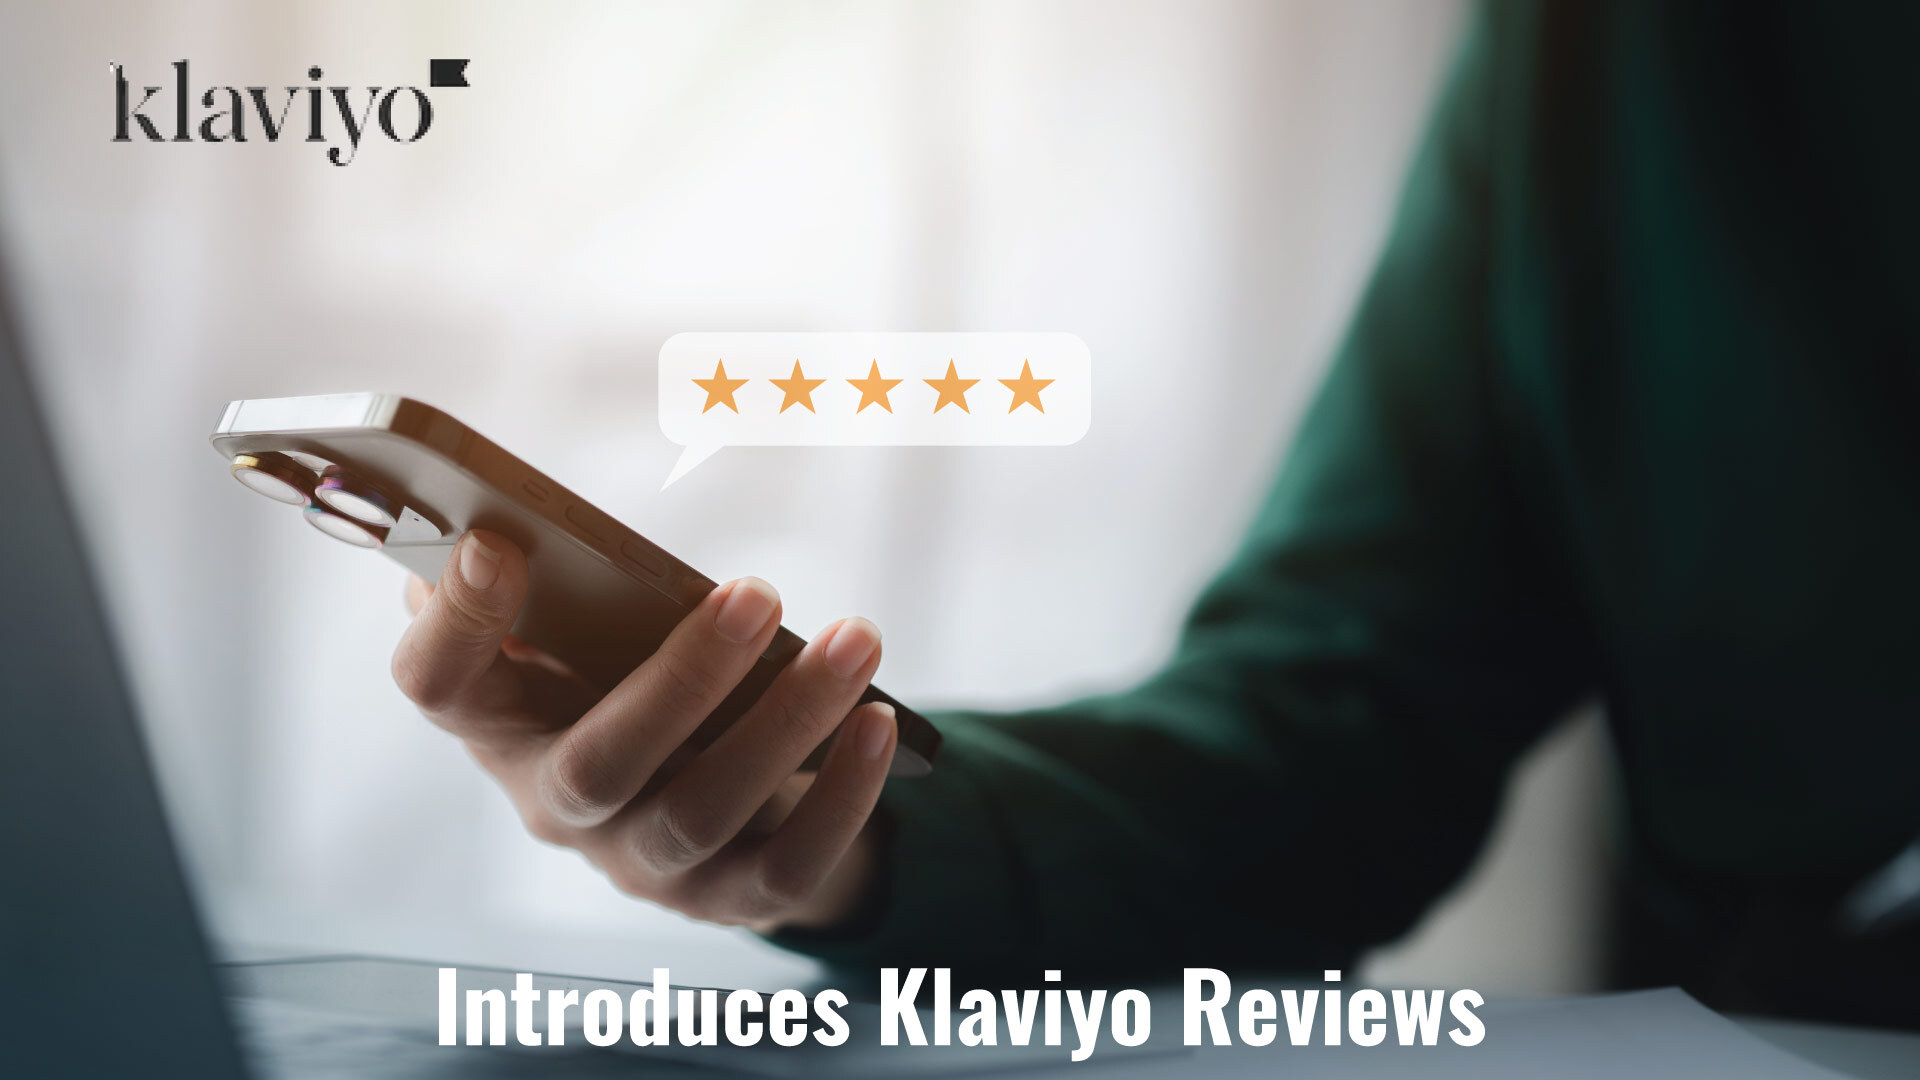 Klaviyo Introduces Klaviyo Reviews